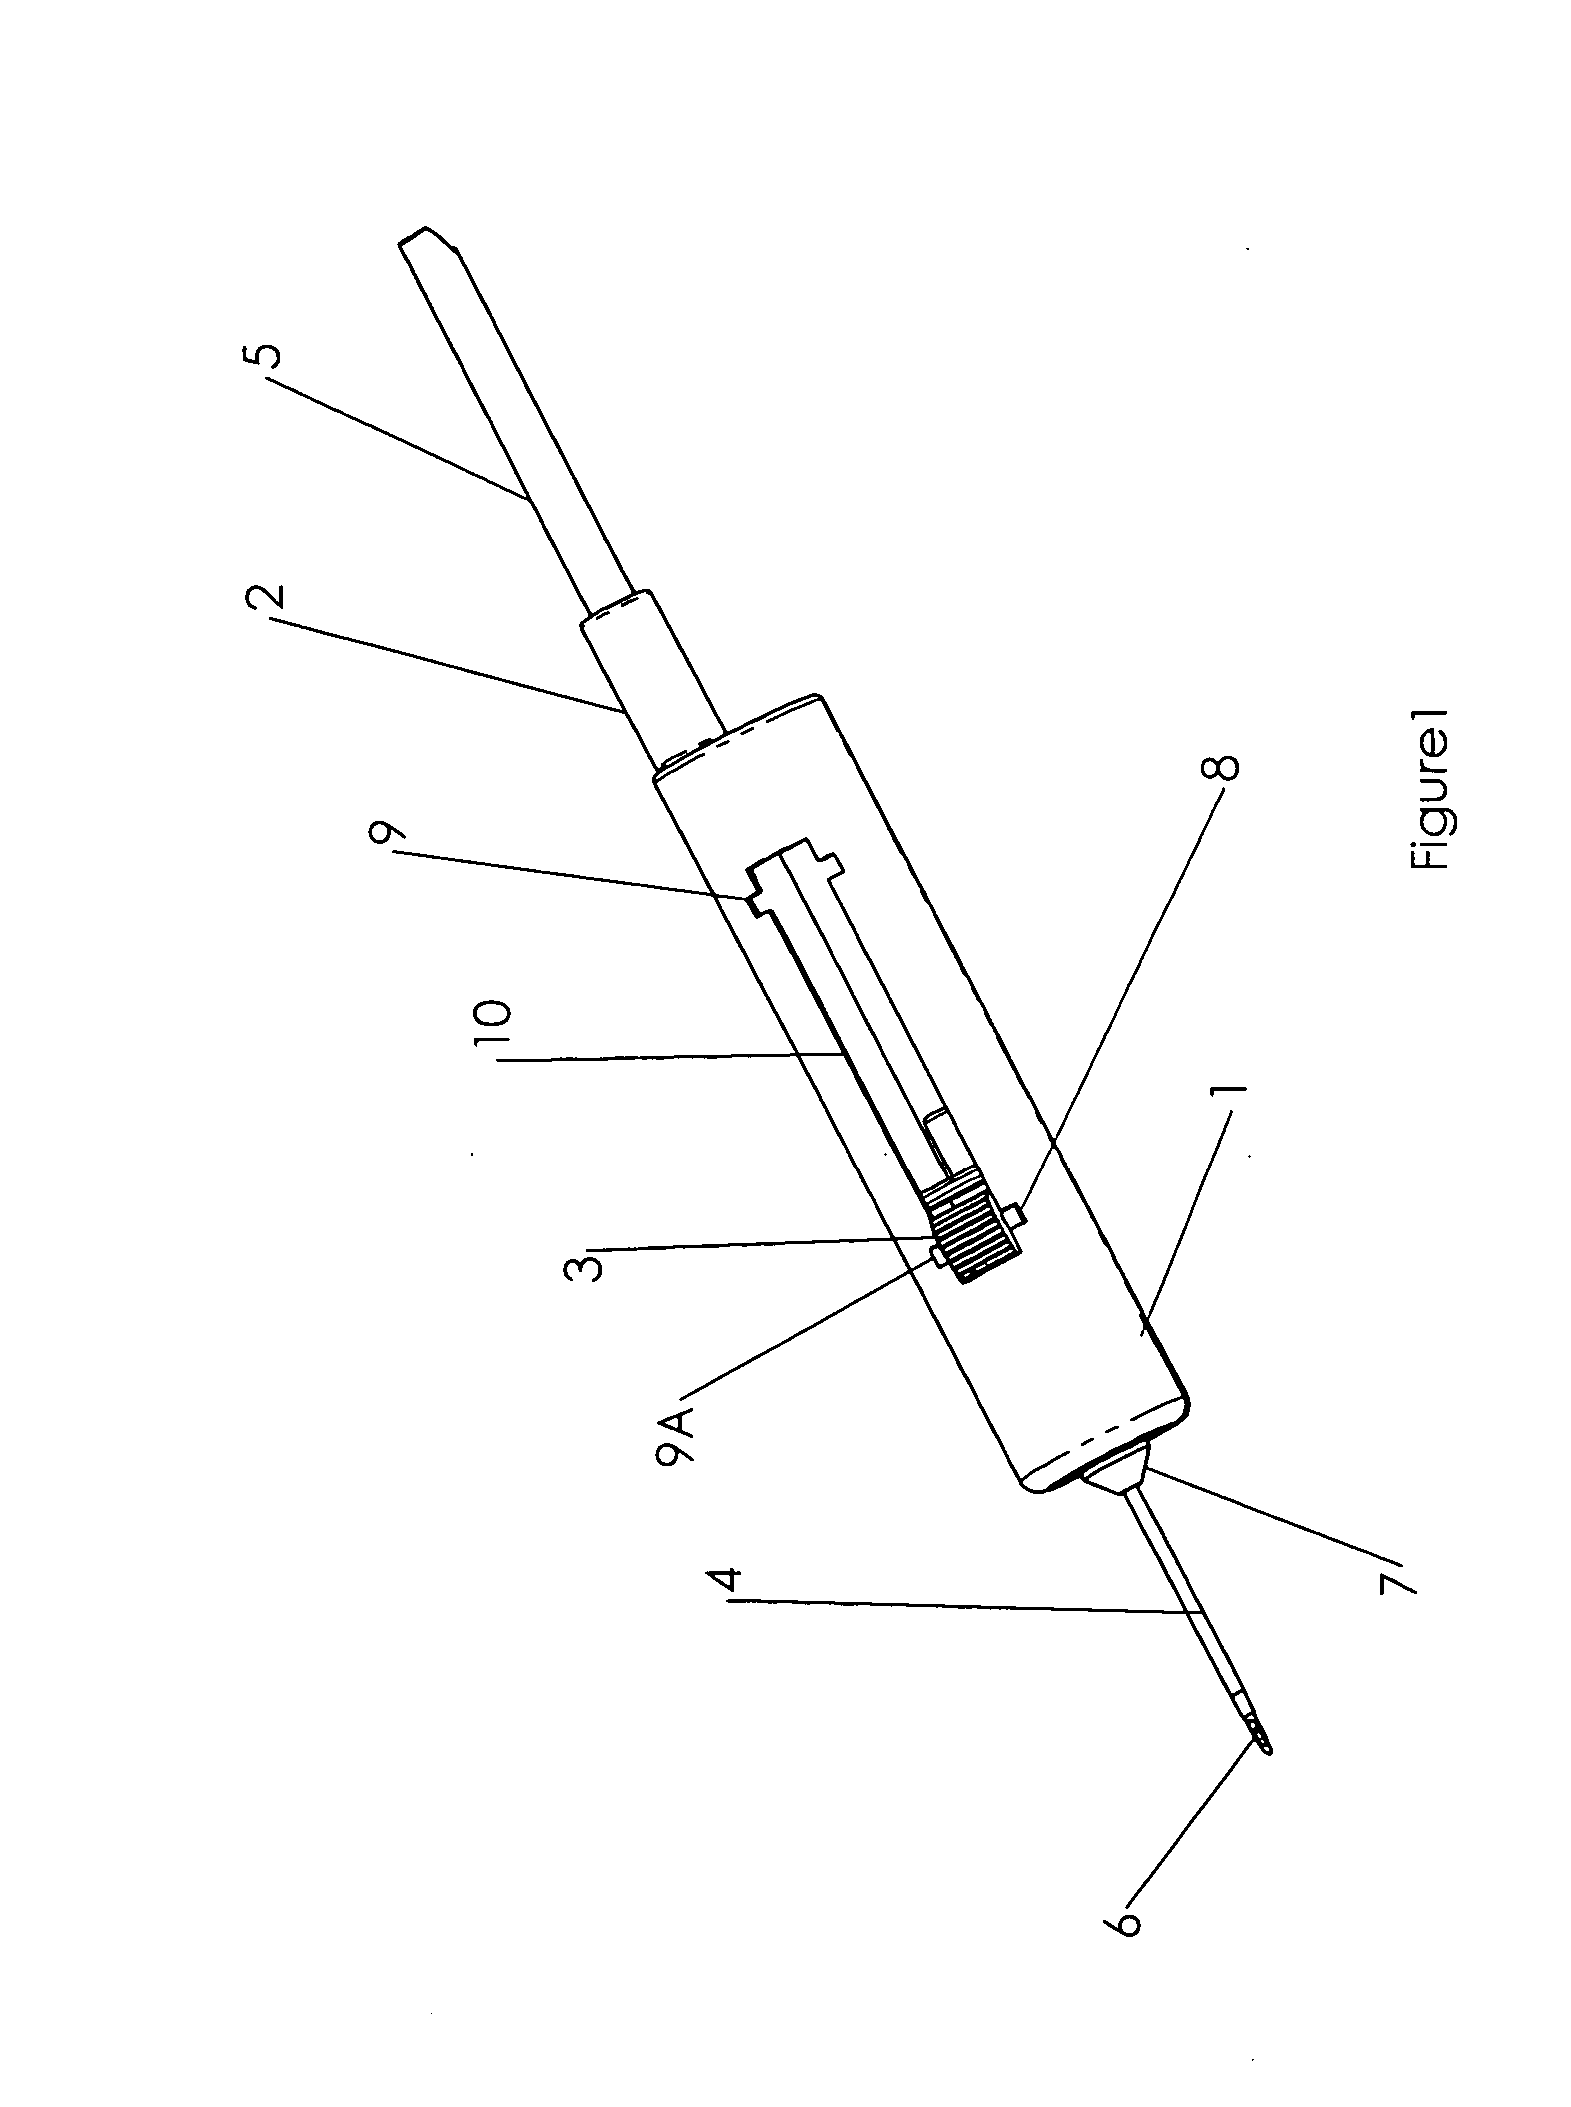 Intravenous catheter device